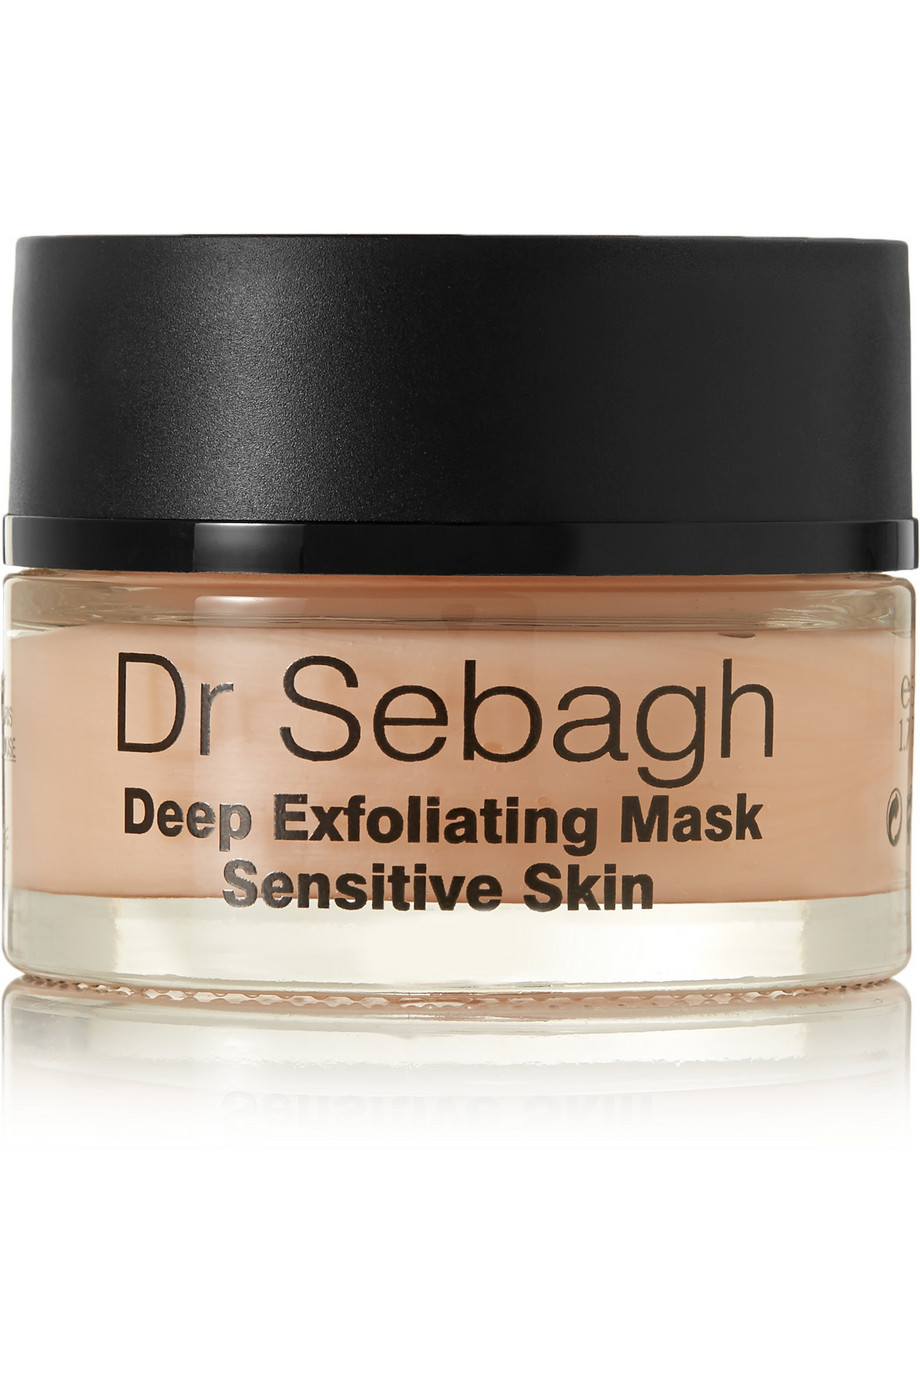 Dr Sebagh Deep Exfoliating Mask Sensitive Skin 50ml - интернет-магазин профессиональной косметики Spadream, изображение 17696